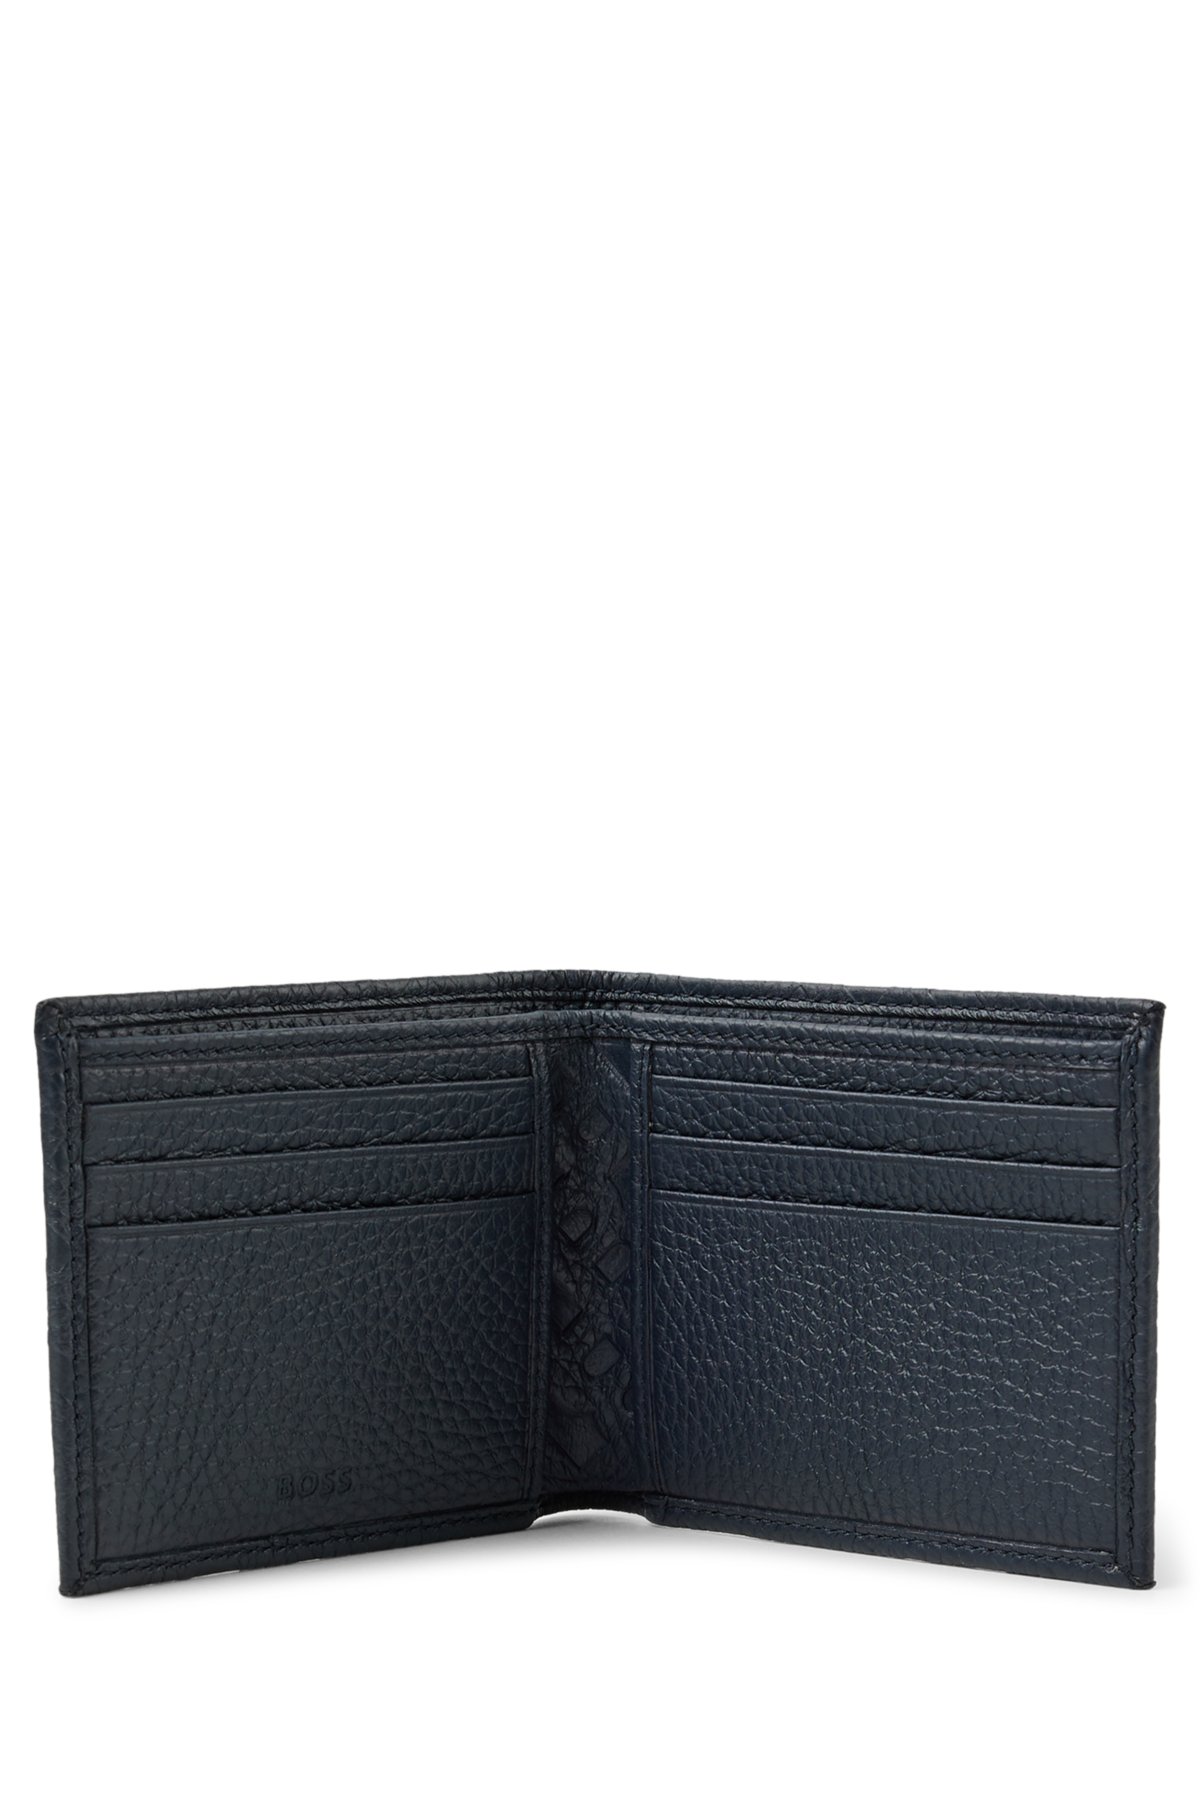 leather embossed monogram wallet